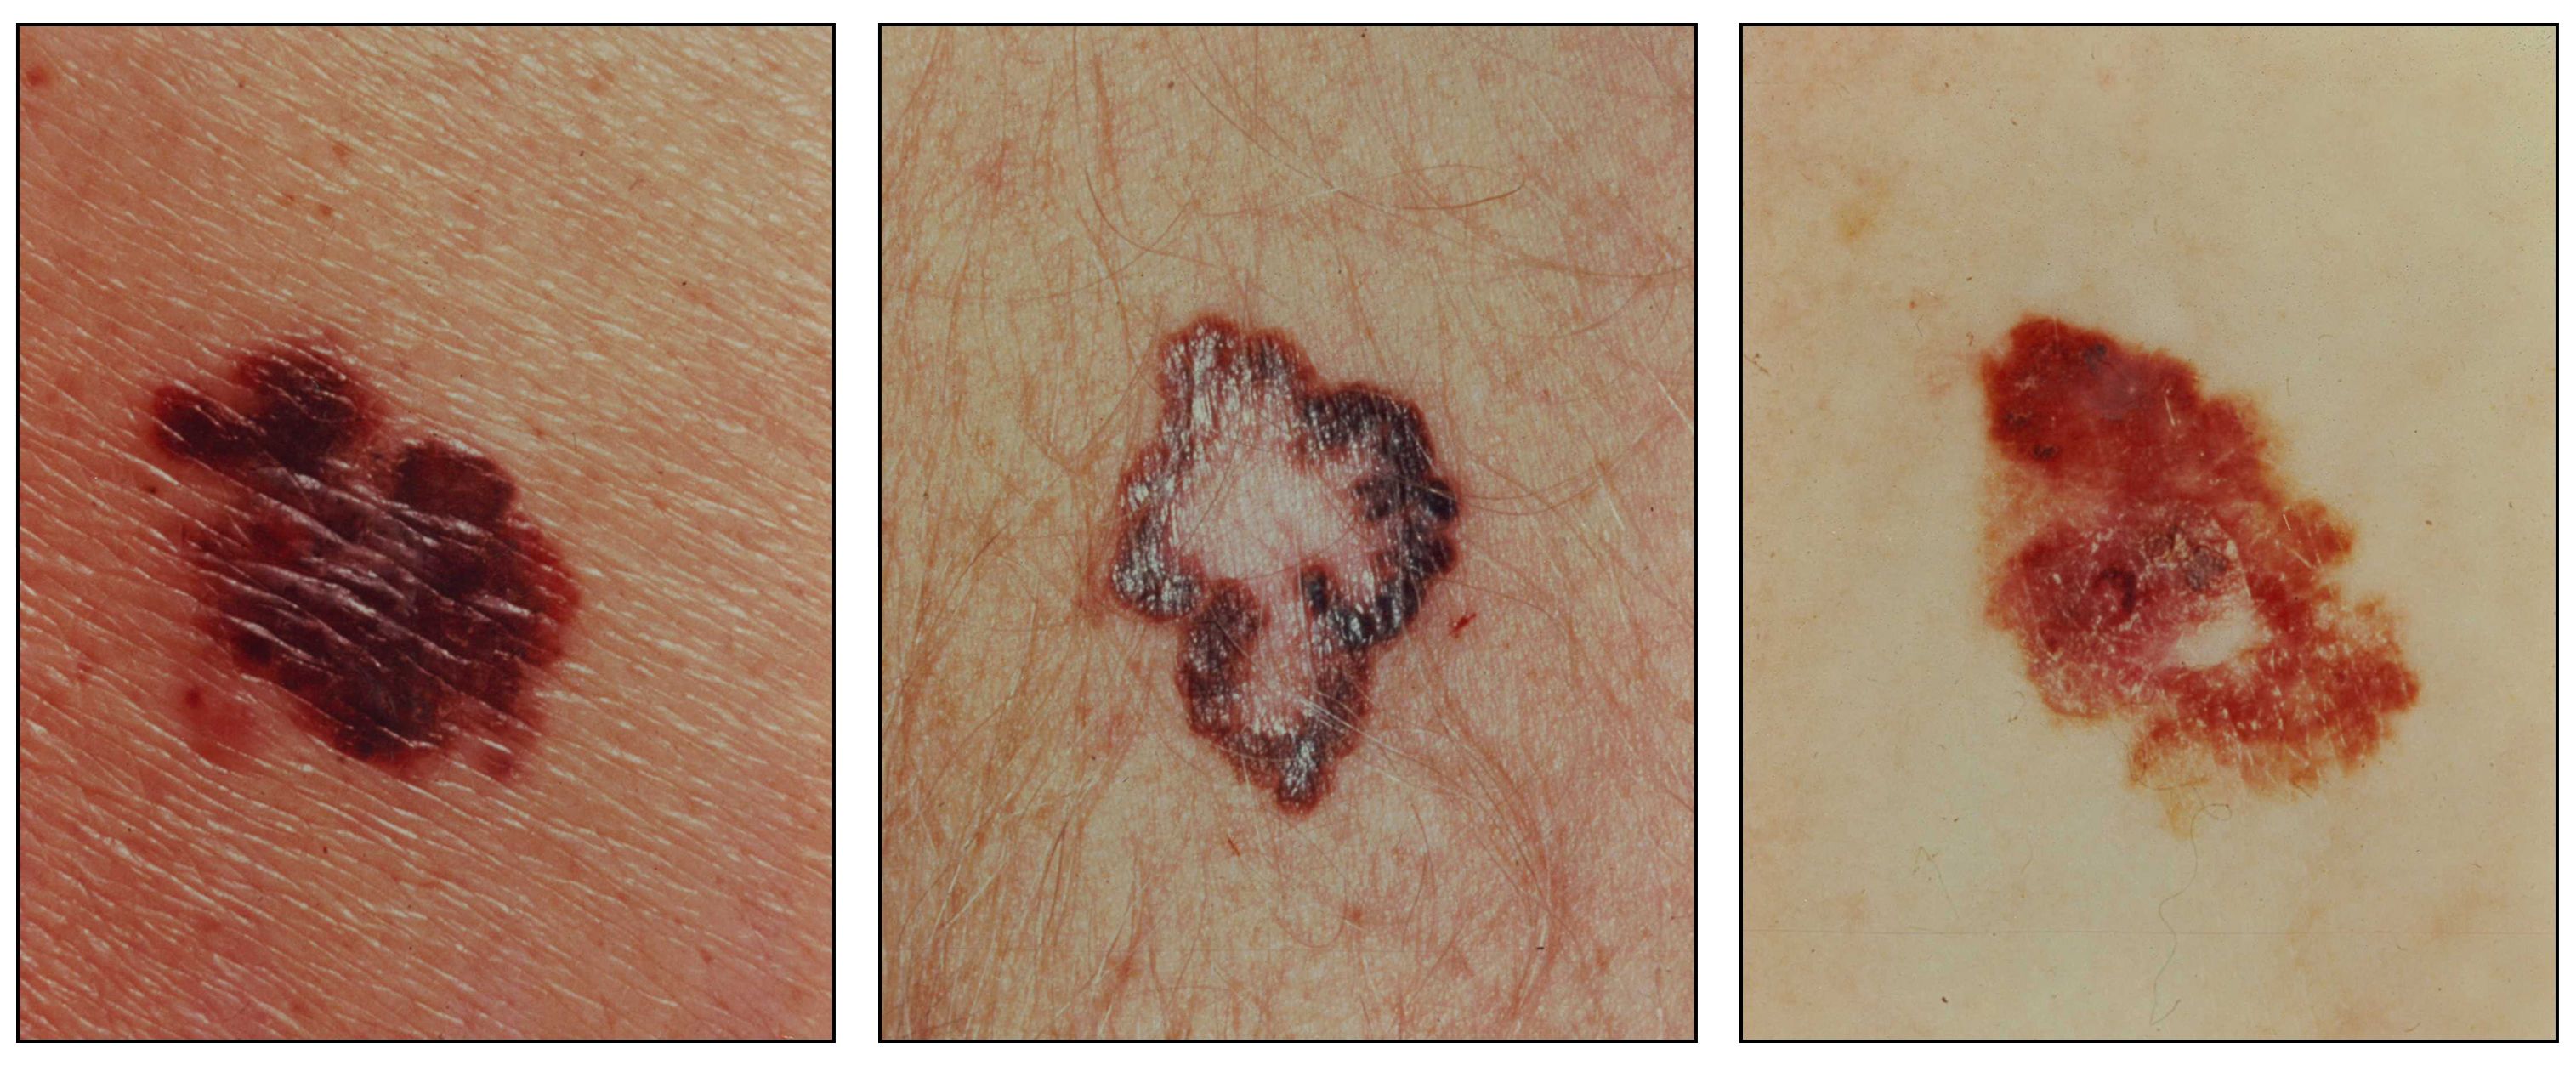 皮膚上の大きく非対称な赤褐色の病変を示す写真（左から1枚目）；皮膚上の大きく境界が不均一な褐色の病変を示す写真（2枚目）；皮膚上の大きく非対称な赤褐色の病変を示す写真（3枚目）。